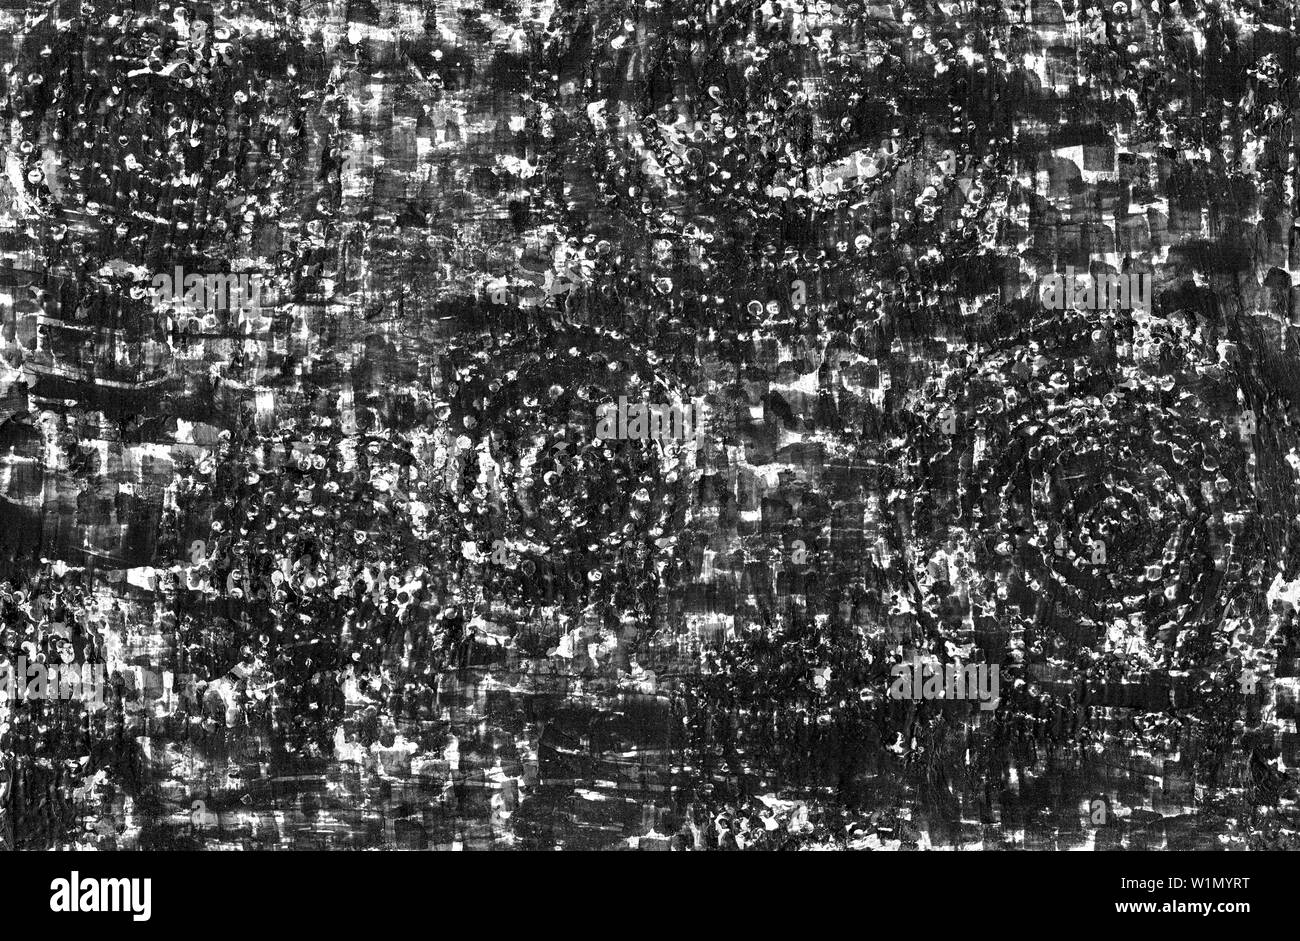 Contrasto astratta grafica grunge background. In bianco e nero la trama grossolana con graffi, punti, linee, cerchi concentrici, tratti e macchie. Il te Foto Stock